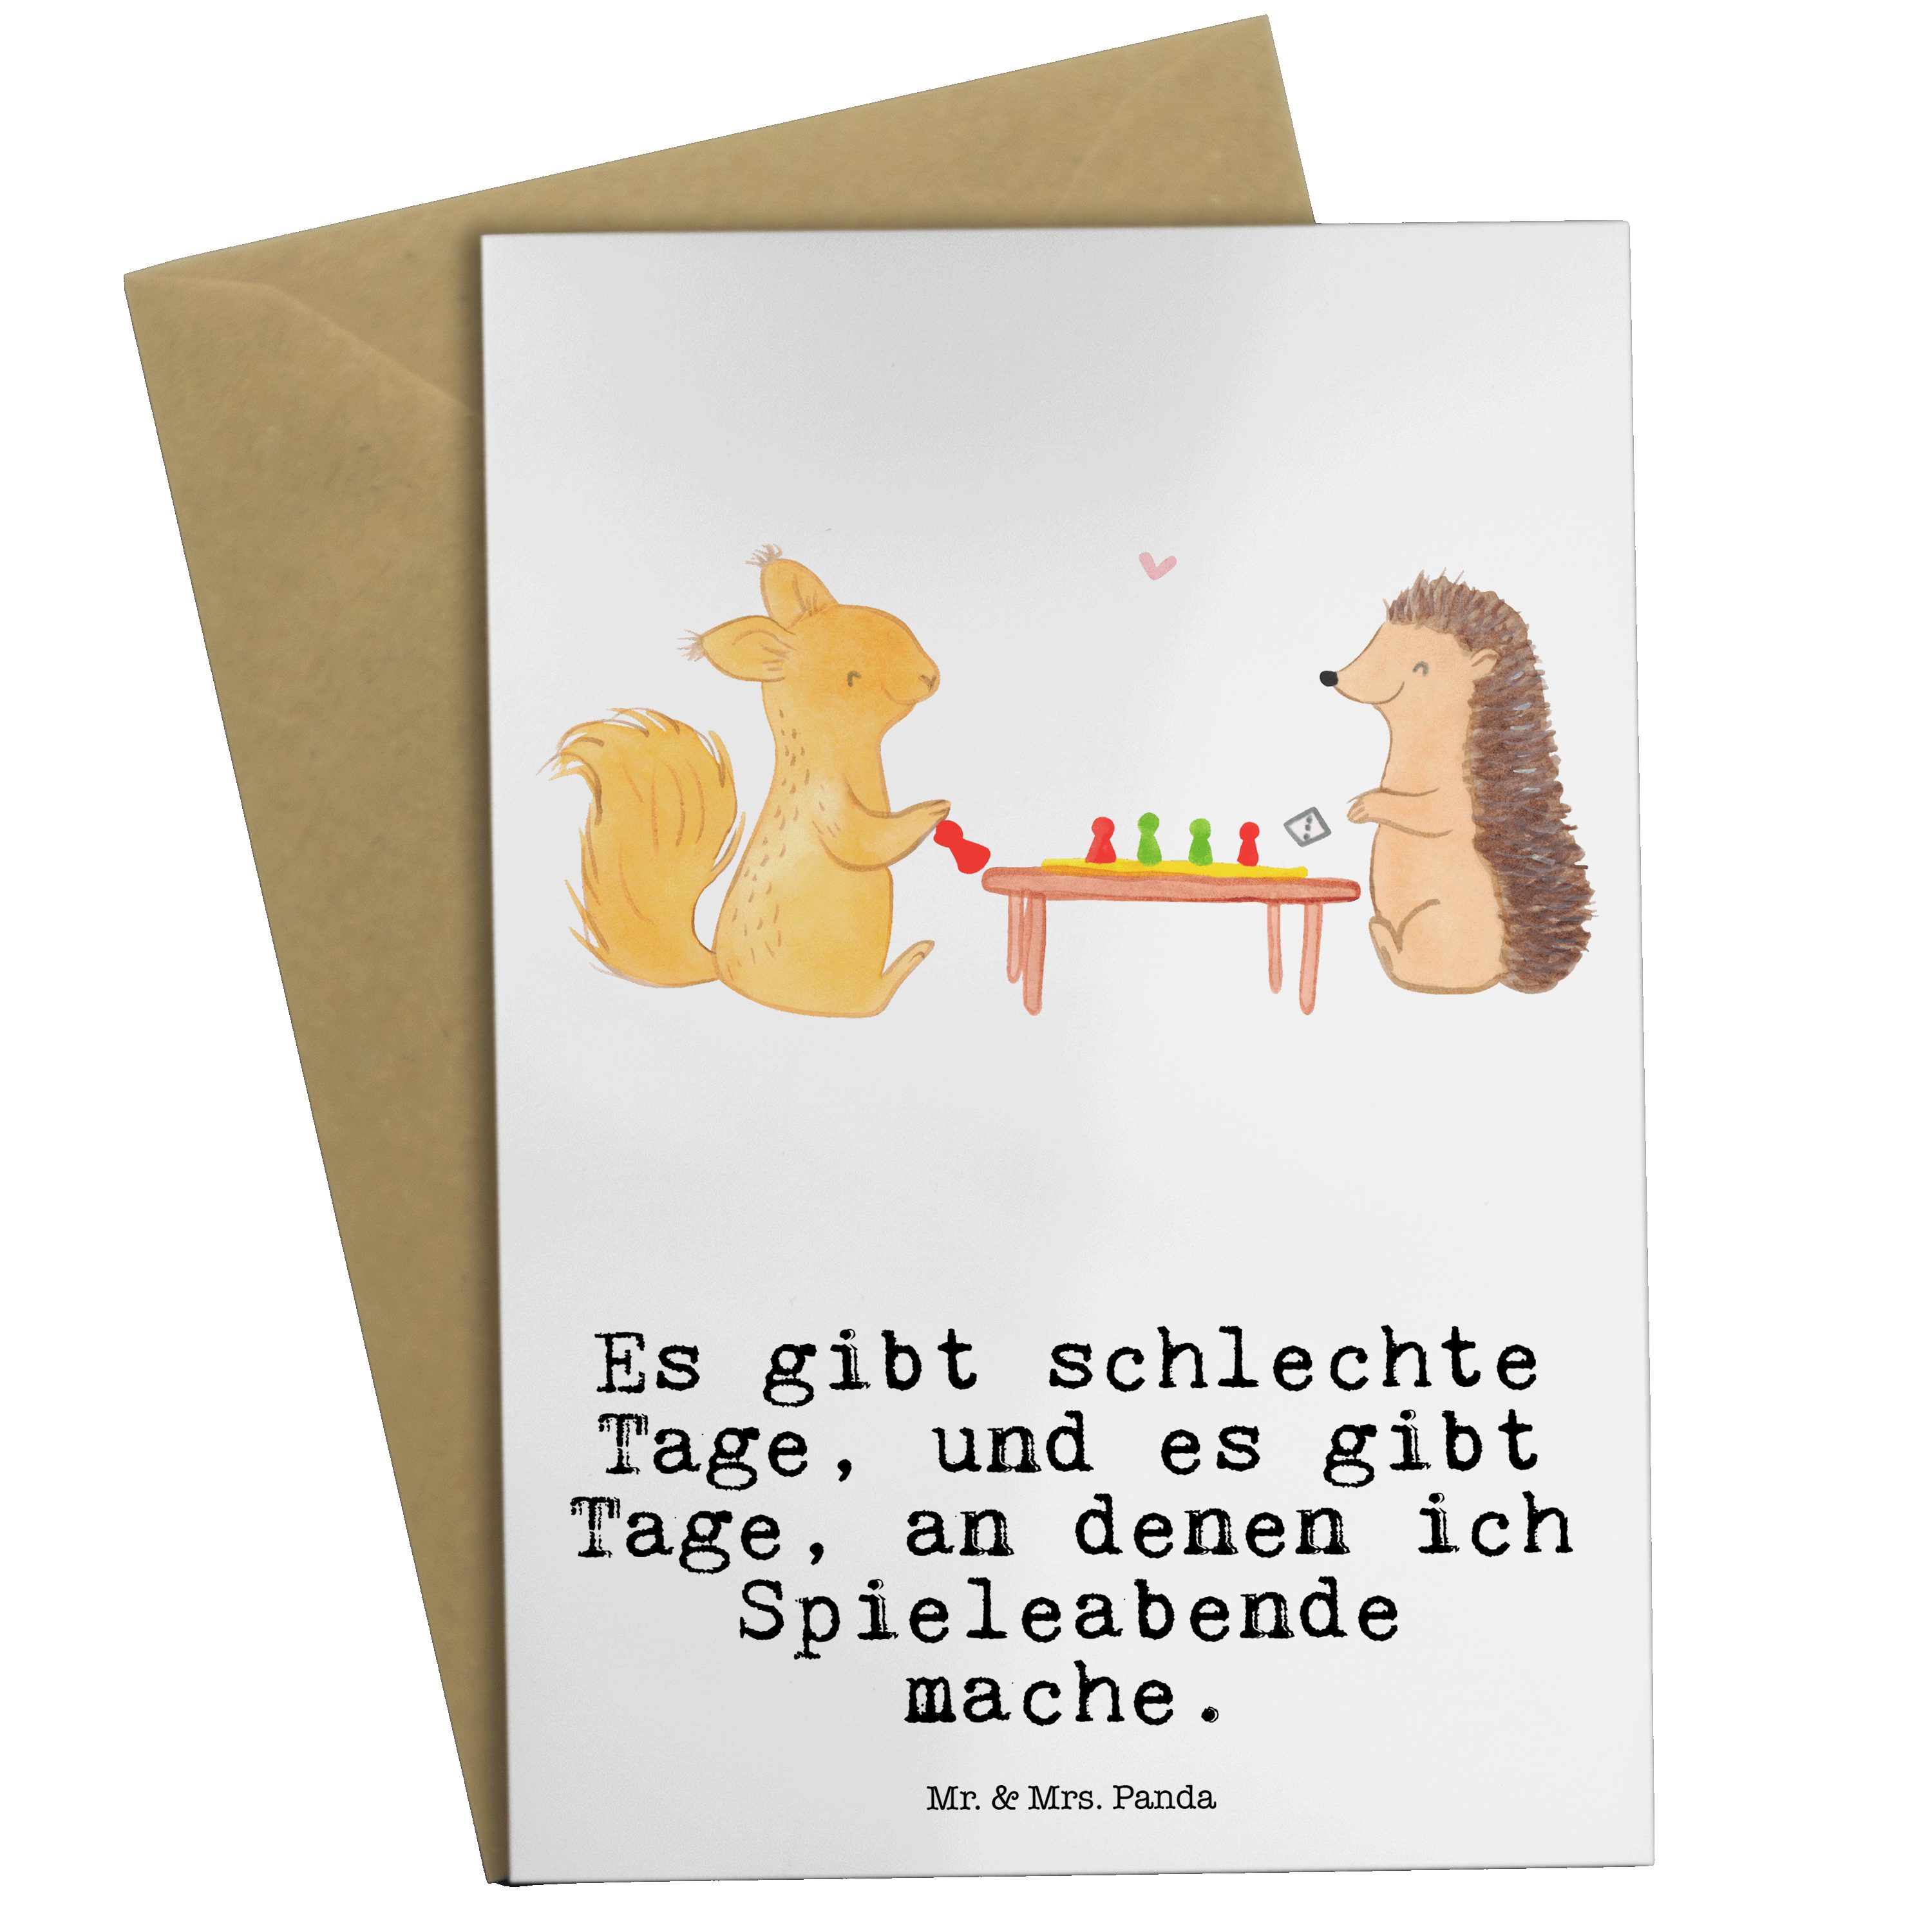 Mr. & Mrs. Panda Grußkarte Eichhörnchen Gesellschaftsspiele Tage - Weiß - Geschenk, Hochzeitskar